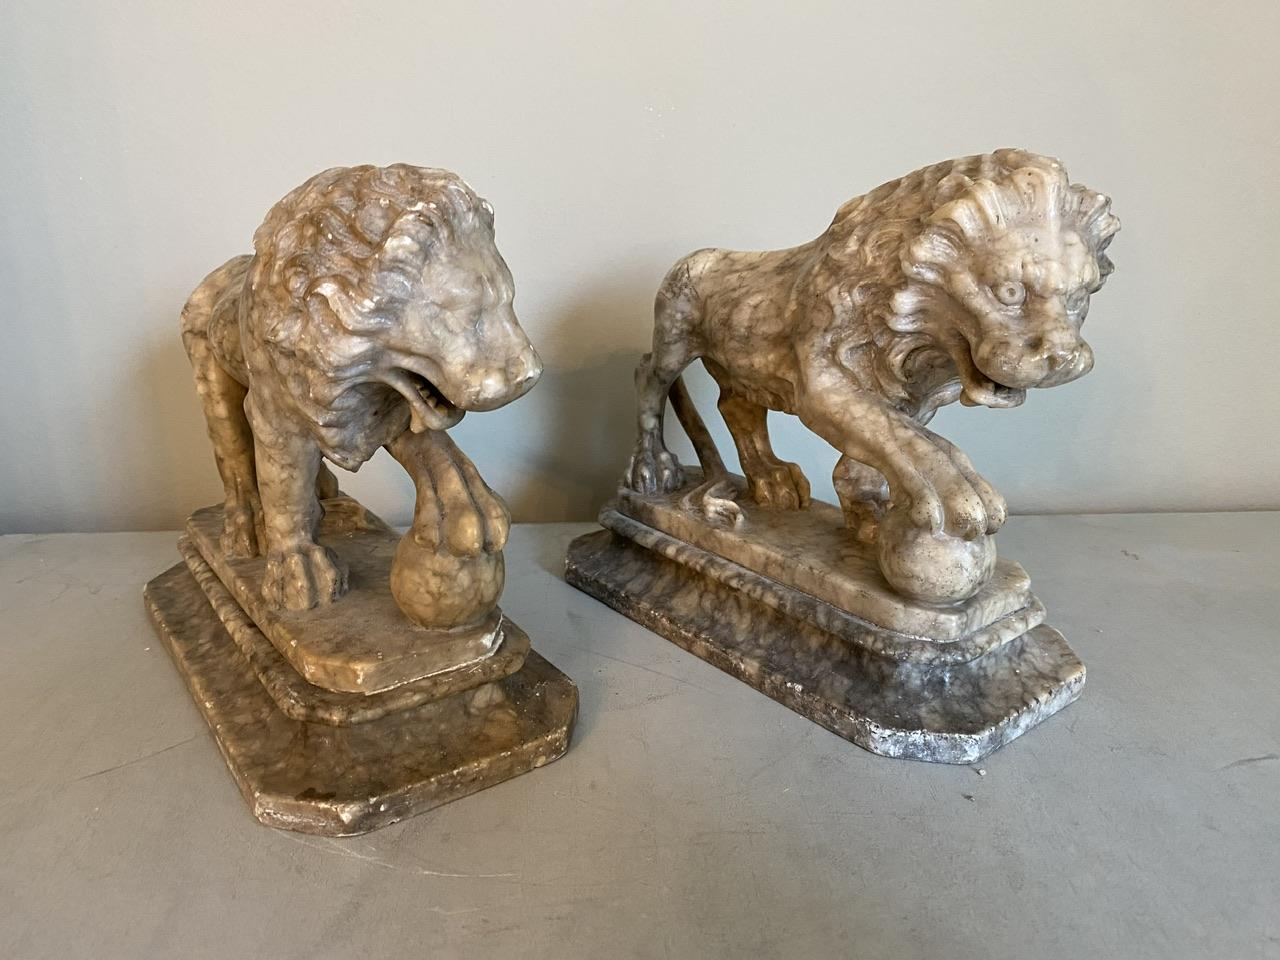 Ravissante et rare paire de Lions en albâtre du Grand Tour du 19e siècle. Bien modelé, l'un est pratiquement parfait, l'autre a quelques petits défauts (voir photos). Hautement décoratif, il s'intègre parfaitement dans n'importe quelle